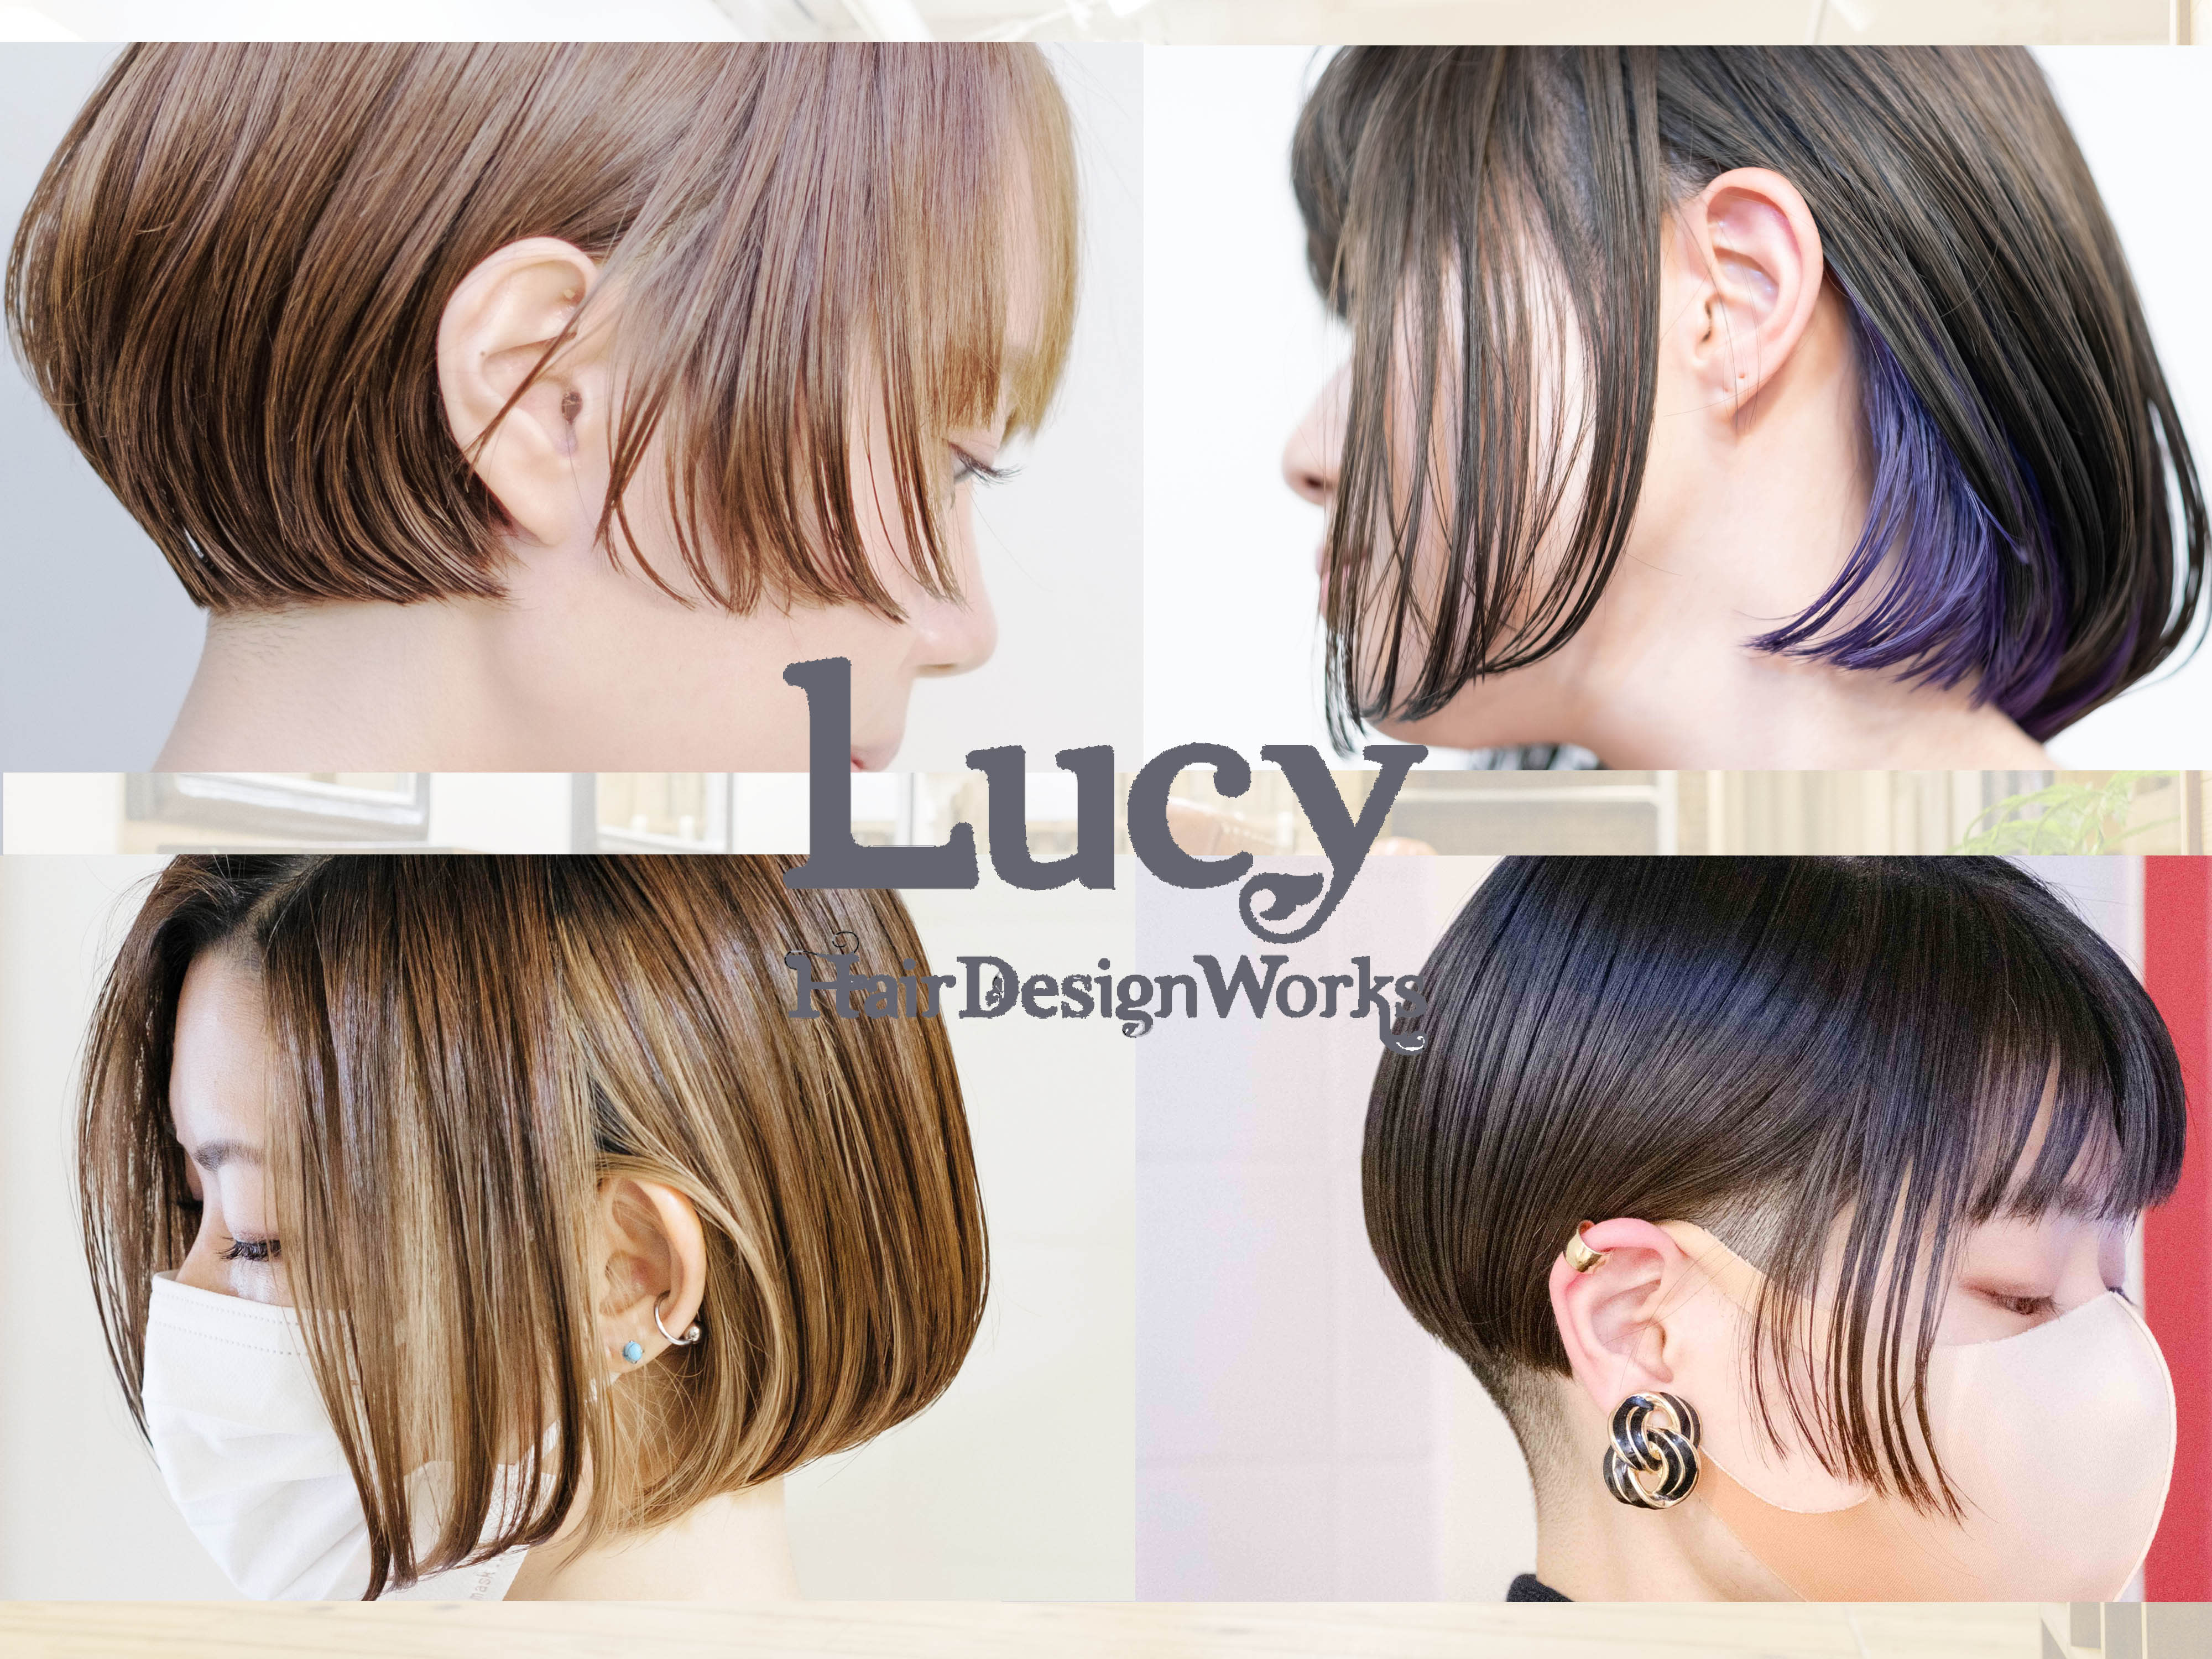 ボブ専門/ Lucy Hair Design Worksのアイキャッチ画像